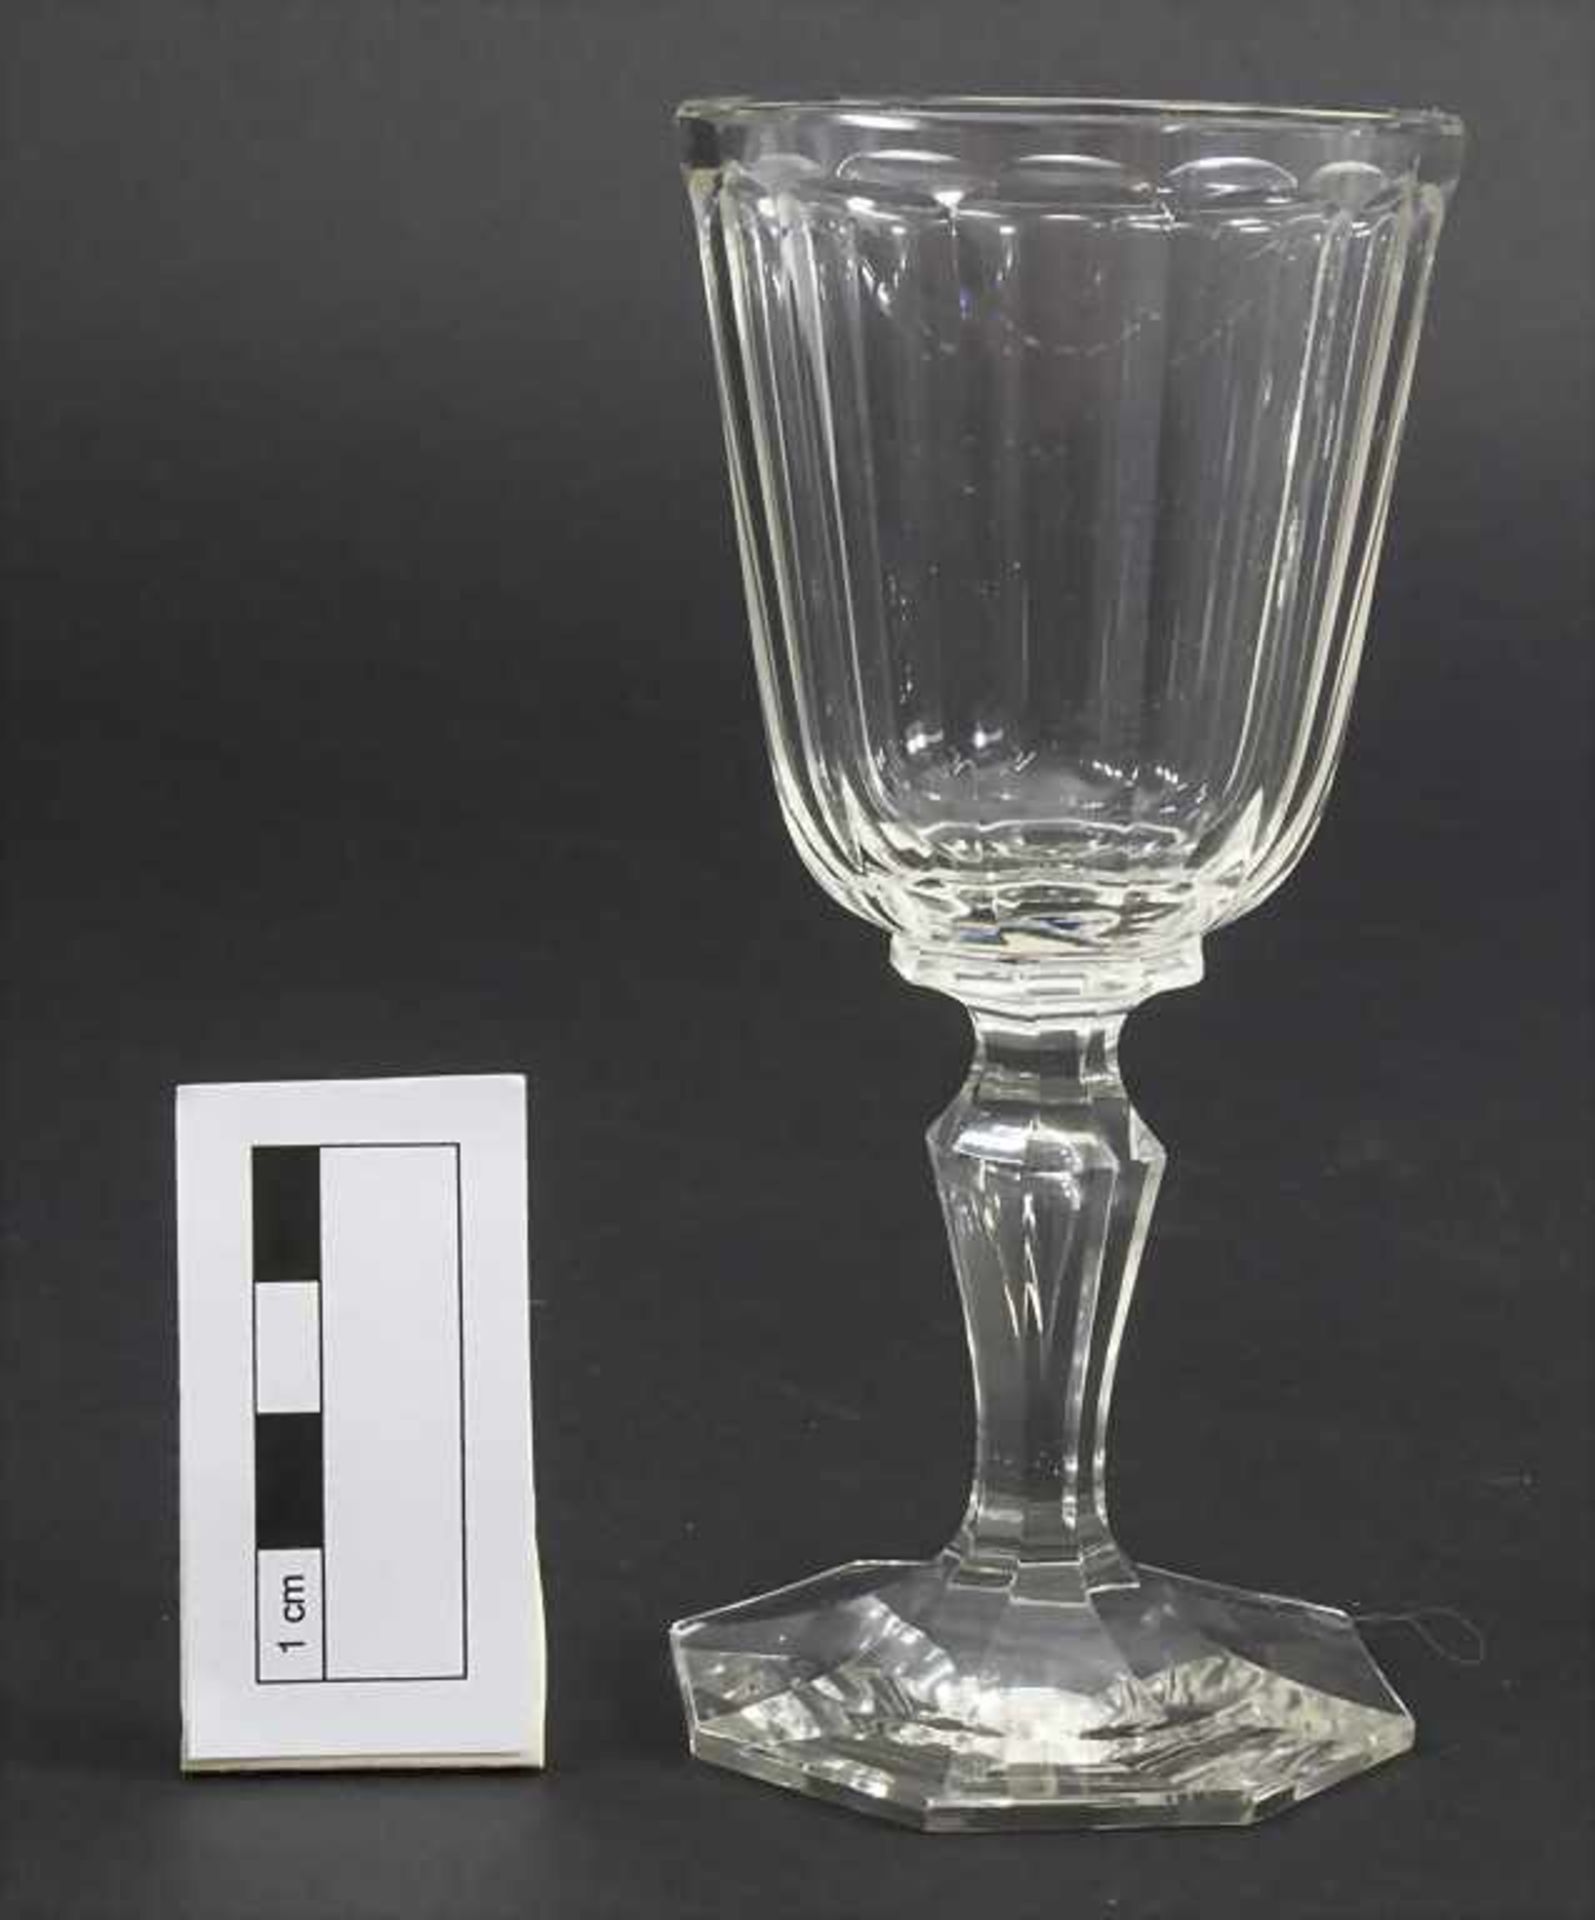 6 Weißweingläser / 6 white wine glasses, J. & L. Lobmeyr, Wien, um 1900 - Image 2 of 2